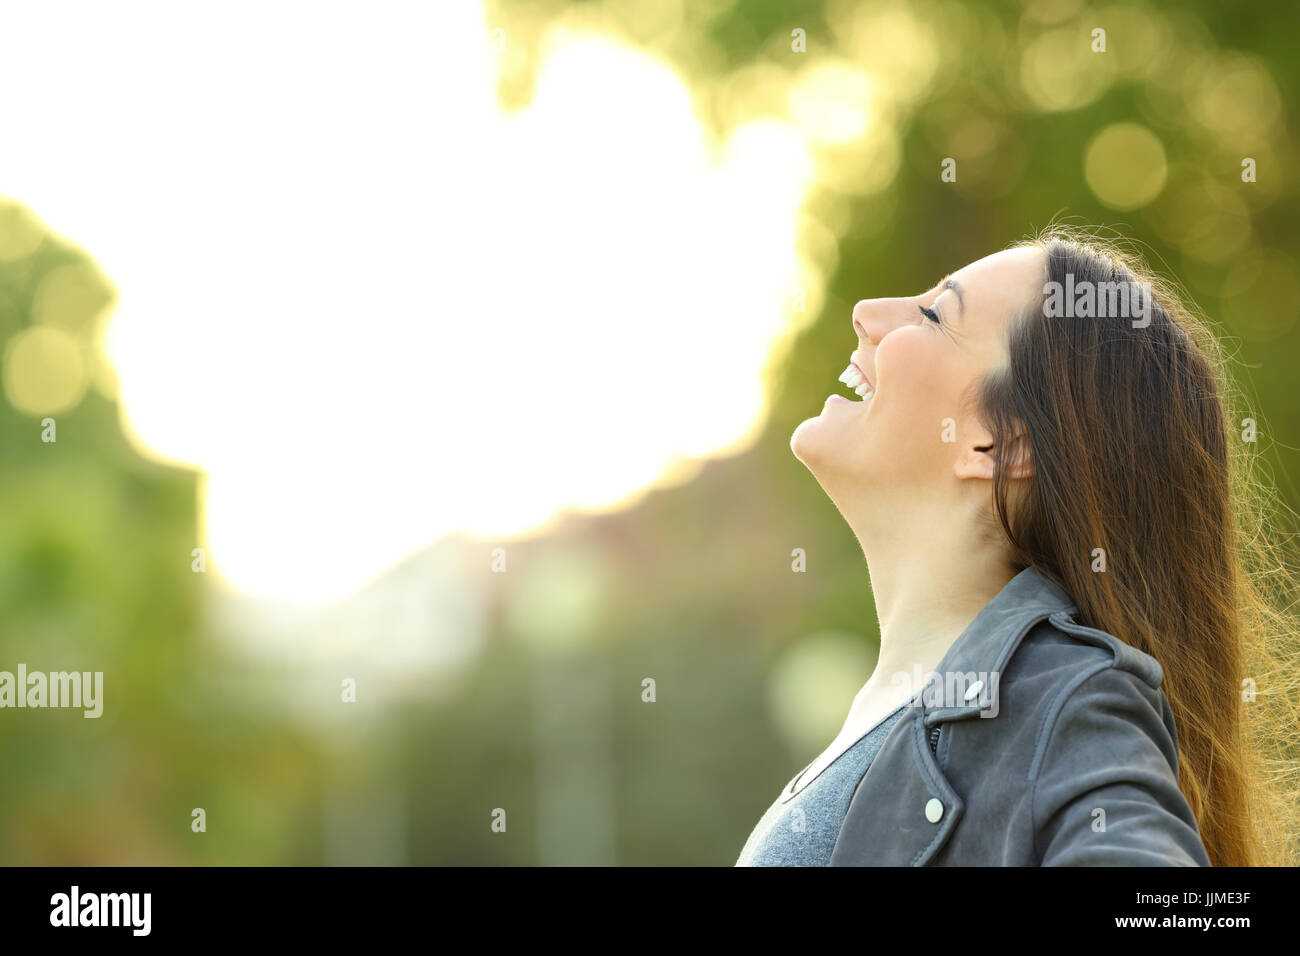 Vue latérale d'une mode portrait femme respirer l'air frais extérieur avec un fond vert Banque D'Images